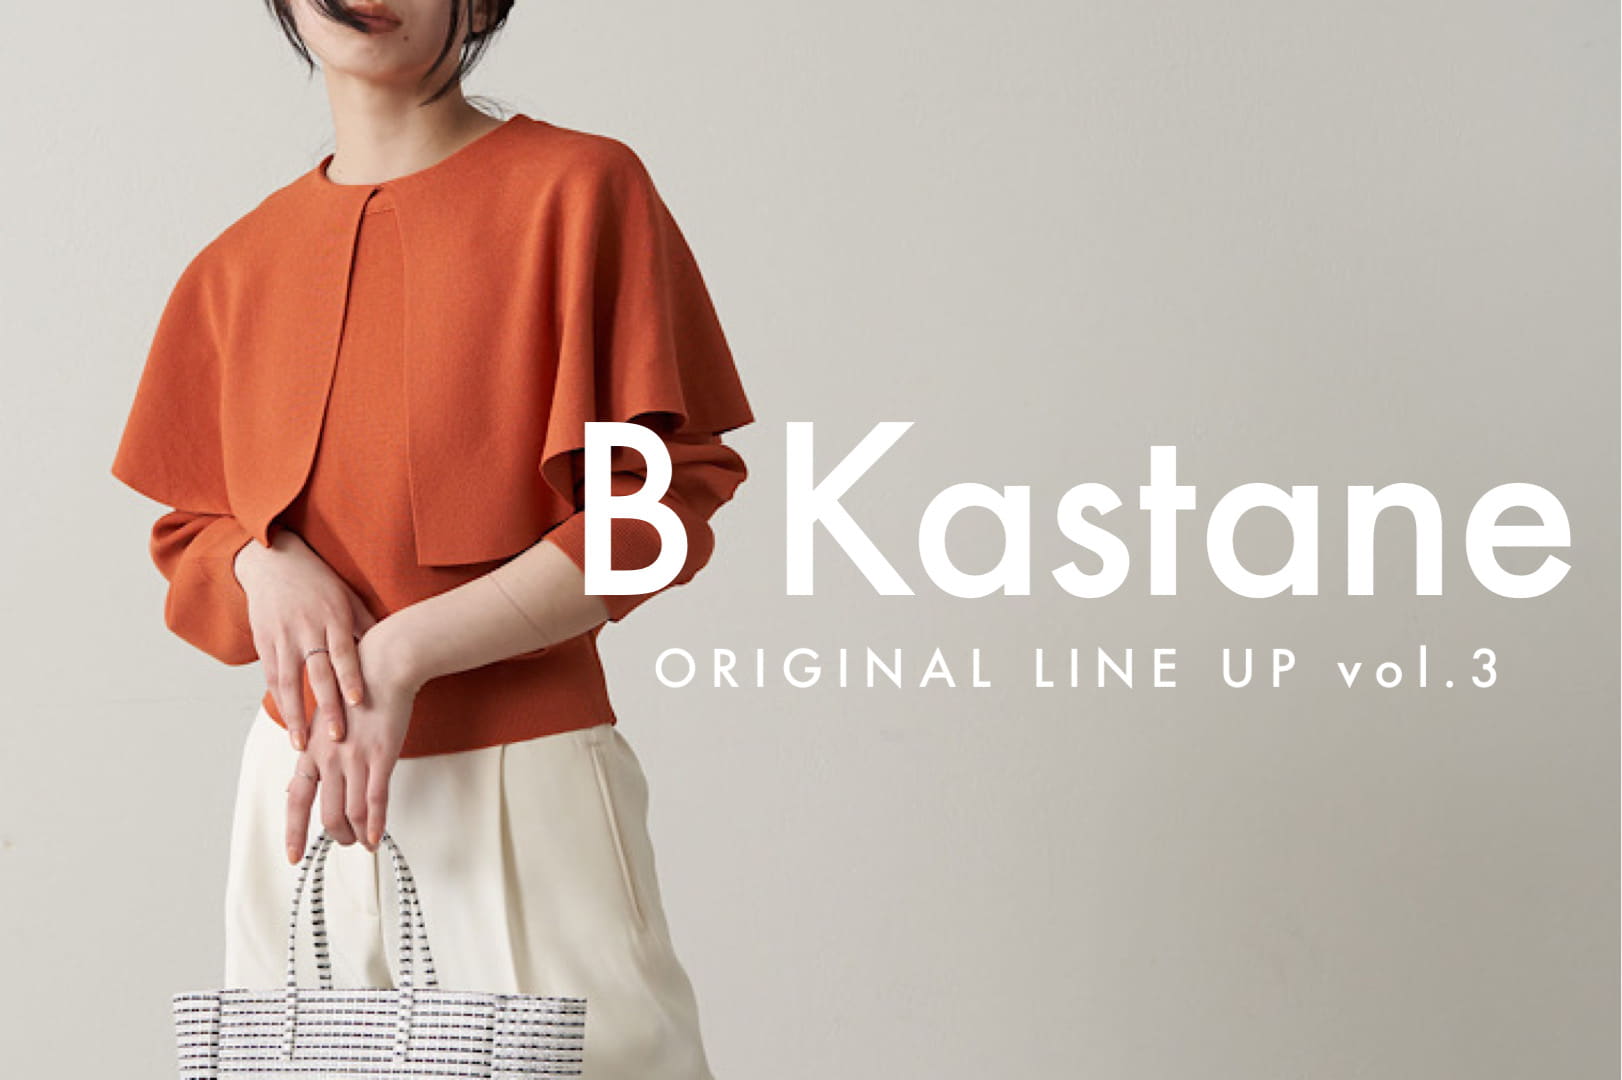 Kastane 【B Kastane】ORIGINAL LINE UP vol.3